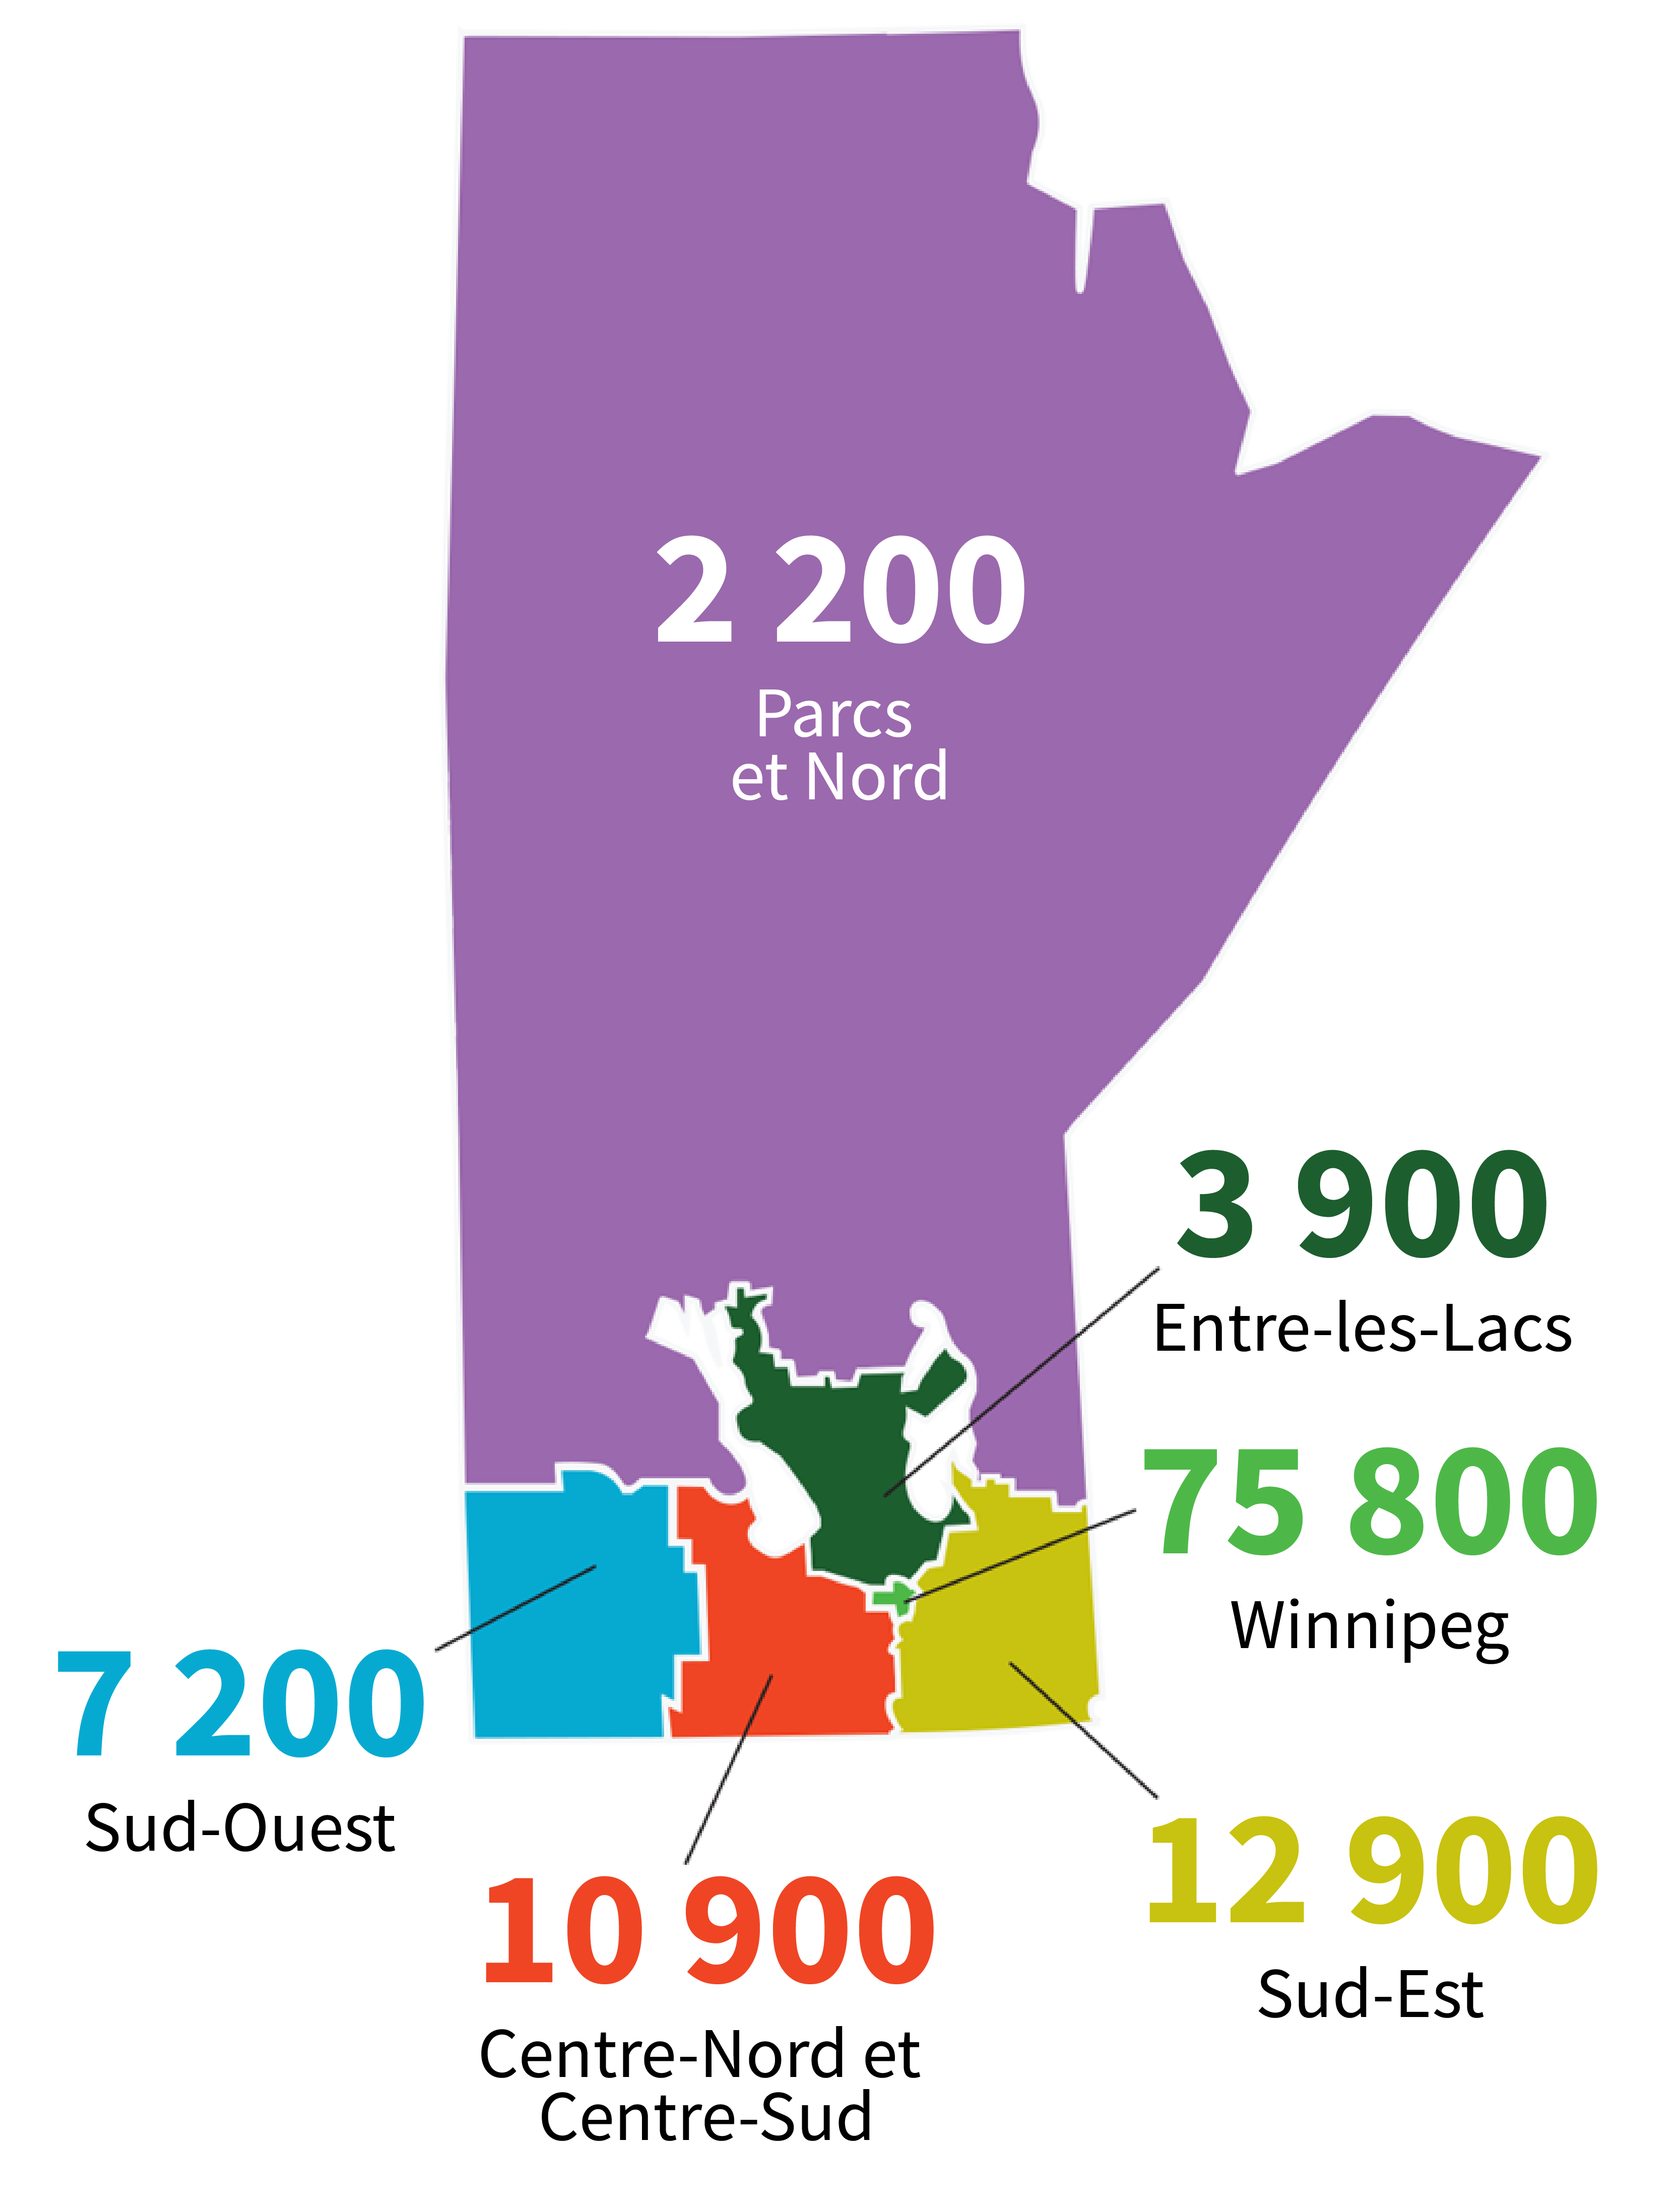 Offres d’emploi par région : 2 200 – Parcs et Nord; 3 900 – Entre-les-Lacs; 7 200 – Sud-Ouest; 75 800 – Winnipeg; 10 900 – Centre-Nord et Centre-Sud; 12 900 – Sud-Est